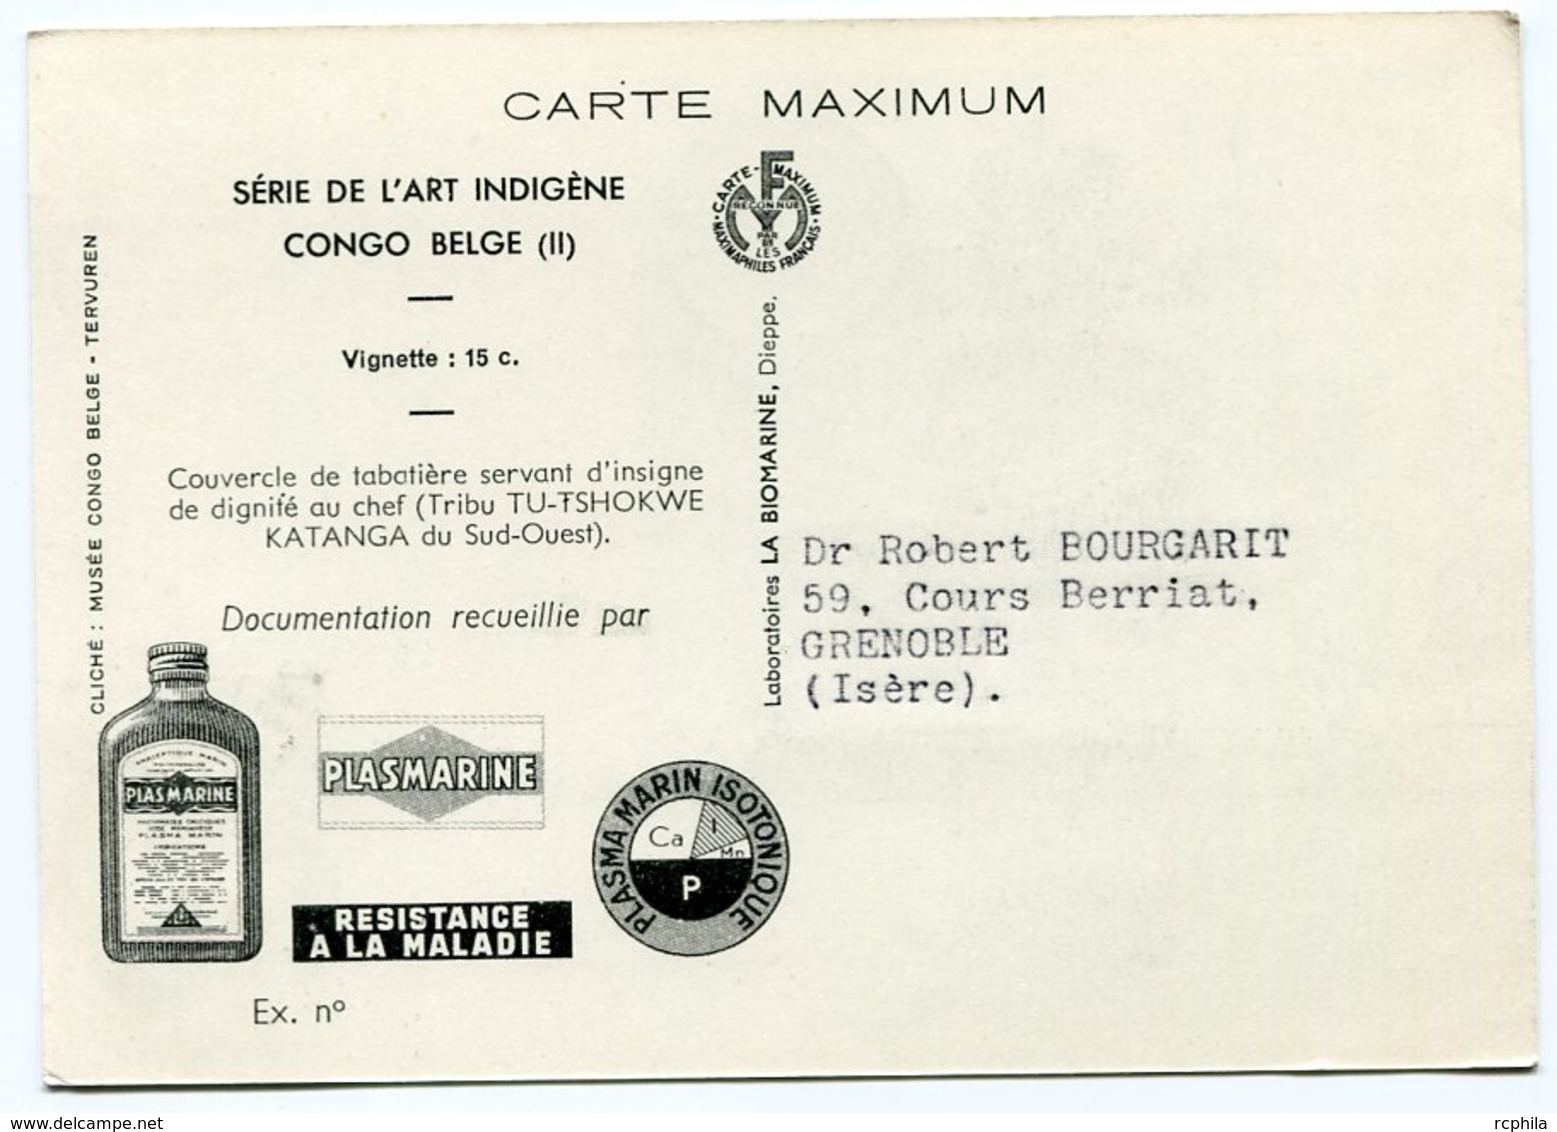 RC 12840 CONGO BELGE 1952 CARTE PLASMARINE PUBLICITÉ ADRESSÉE AUX MEDECINS - Covers & Documents